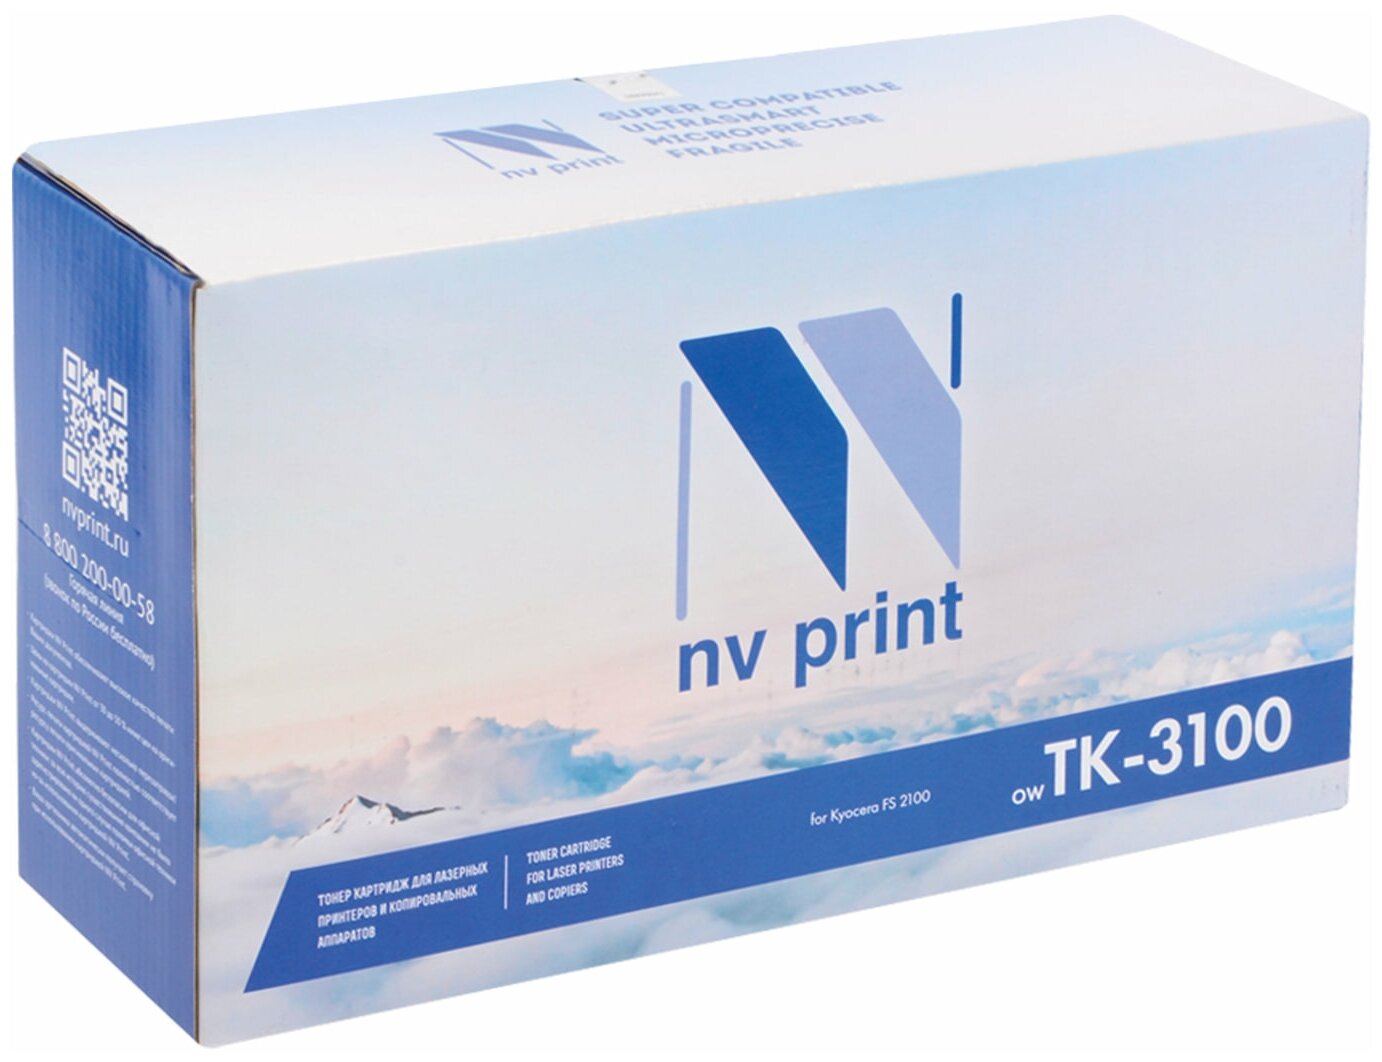 Тонер-картридж NV PRINT (NV-TK-3100) для KYOCERA FS2100D/ DN/ M3040DN/ M3540DN, ресурс 12500 стр.